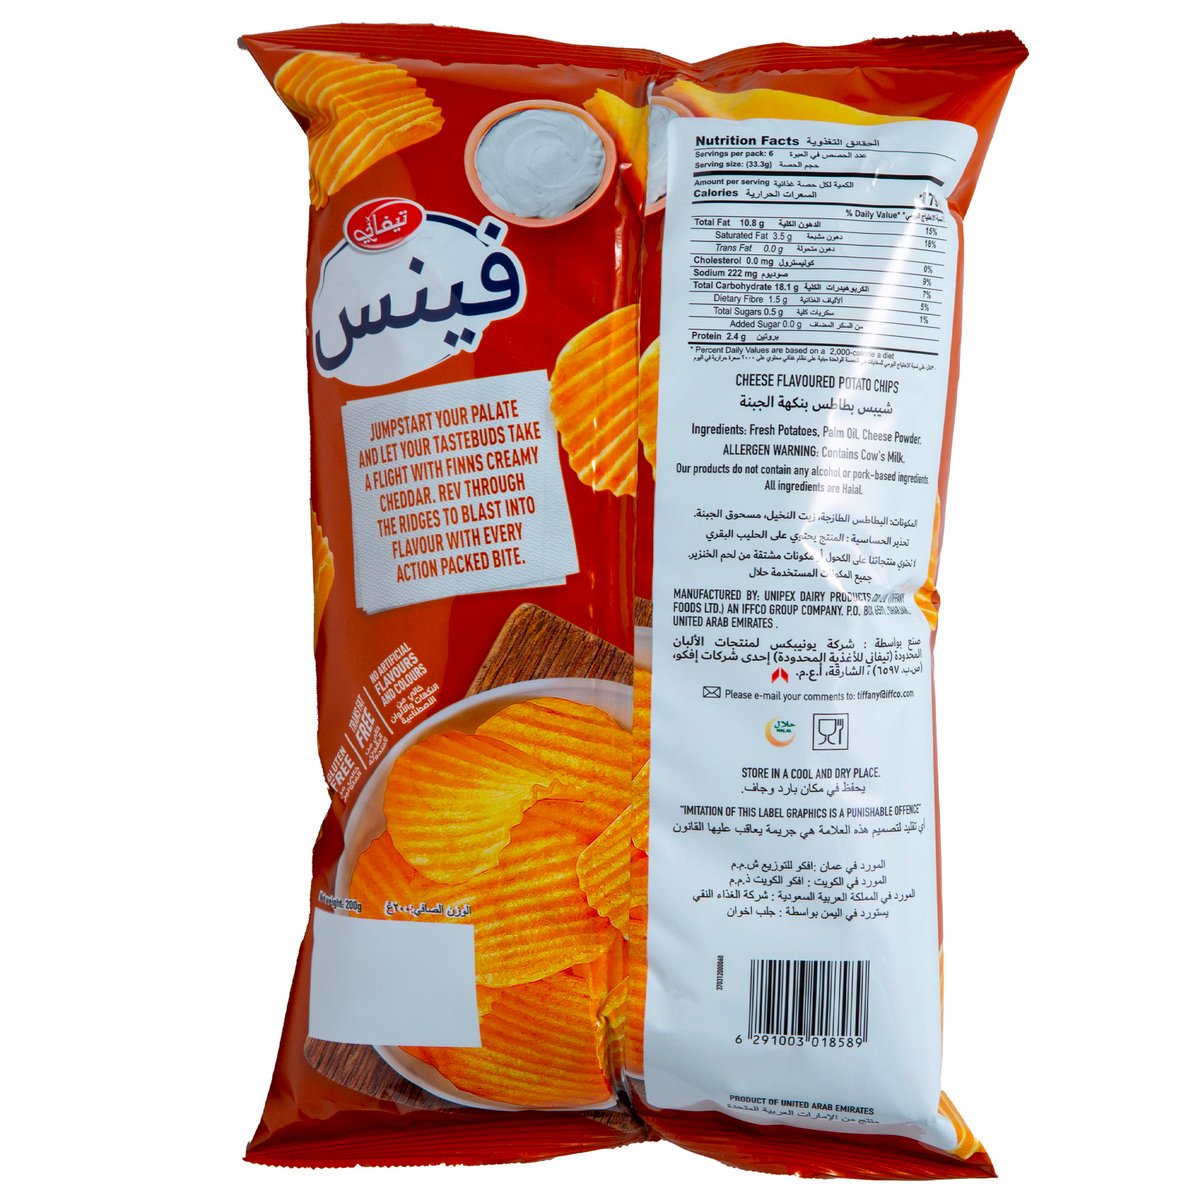 Tiffany Finns Creamy Cheddar Potato Chips 170 g